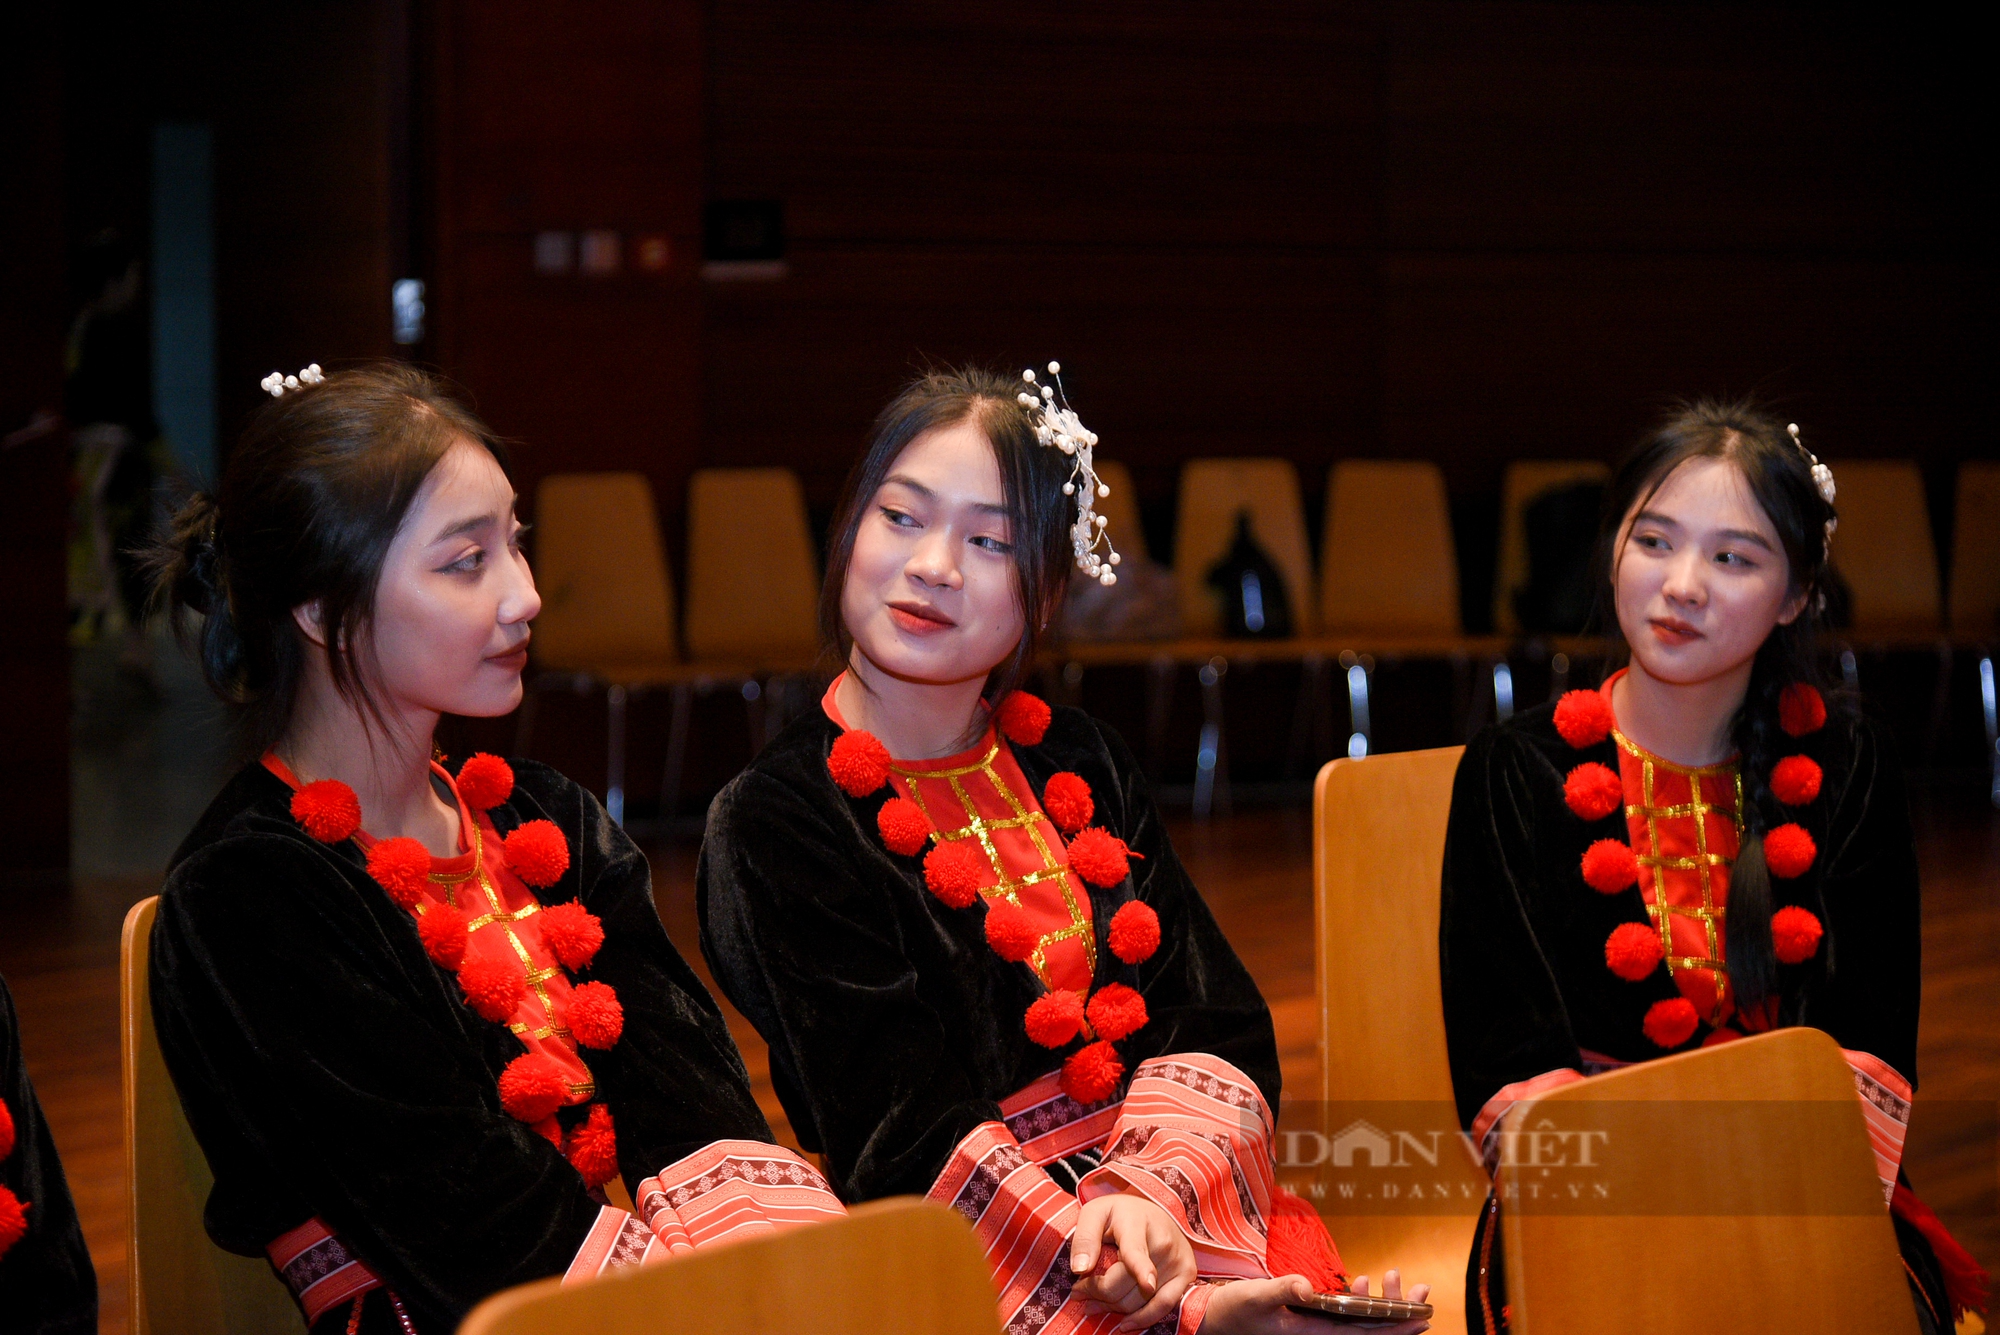 Đủ cung bậc cảm xúc tại lễ chào đón tân sinh viên dân tộc Dao tại Hà Nội lần thứ 3 - Ảnh 9.